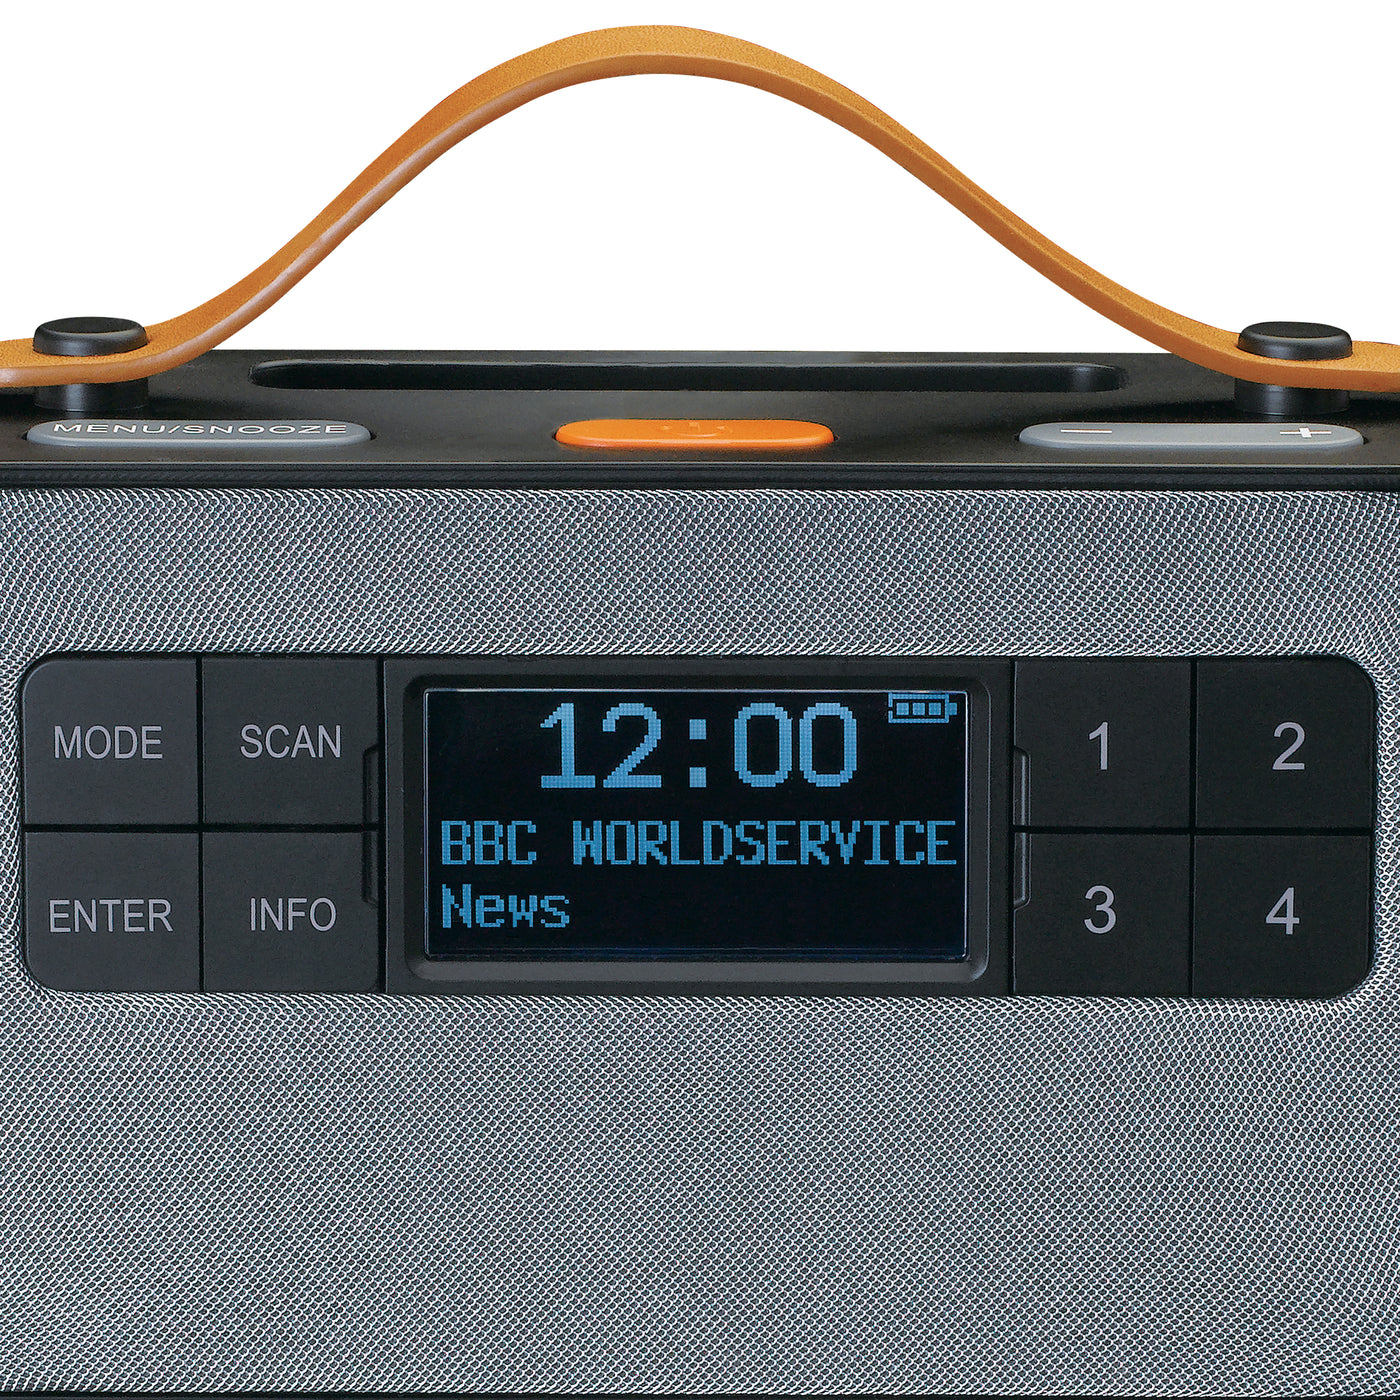 LENCO PDR-065BK - Przenośne radio FM/DAB+ z dużymi przyciskami i funkcją "Easy Mode", czarne